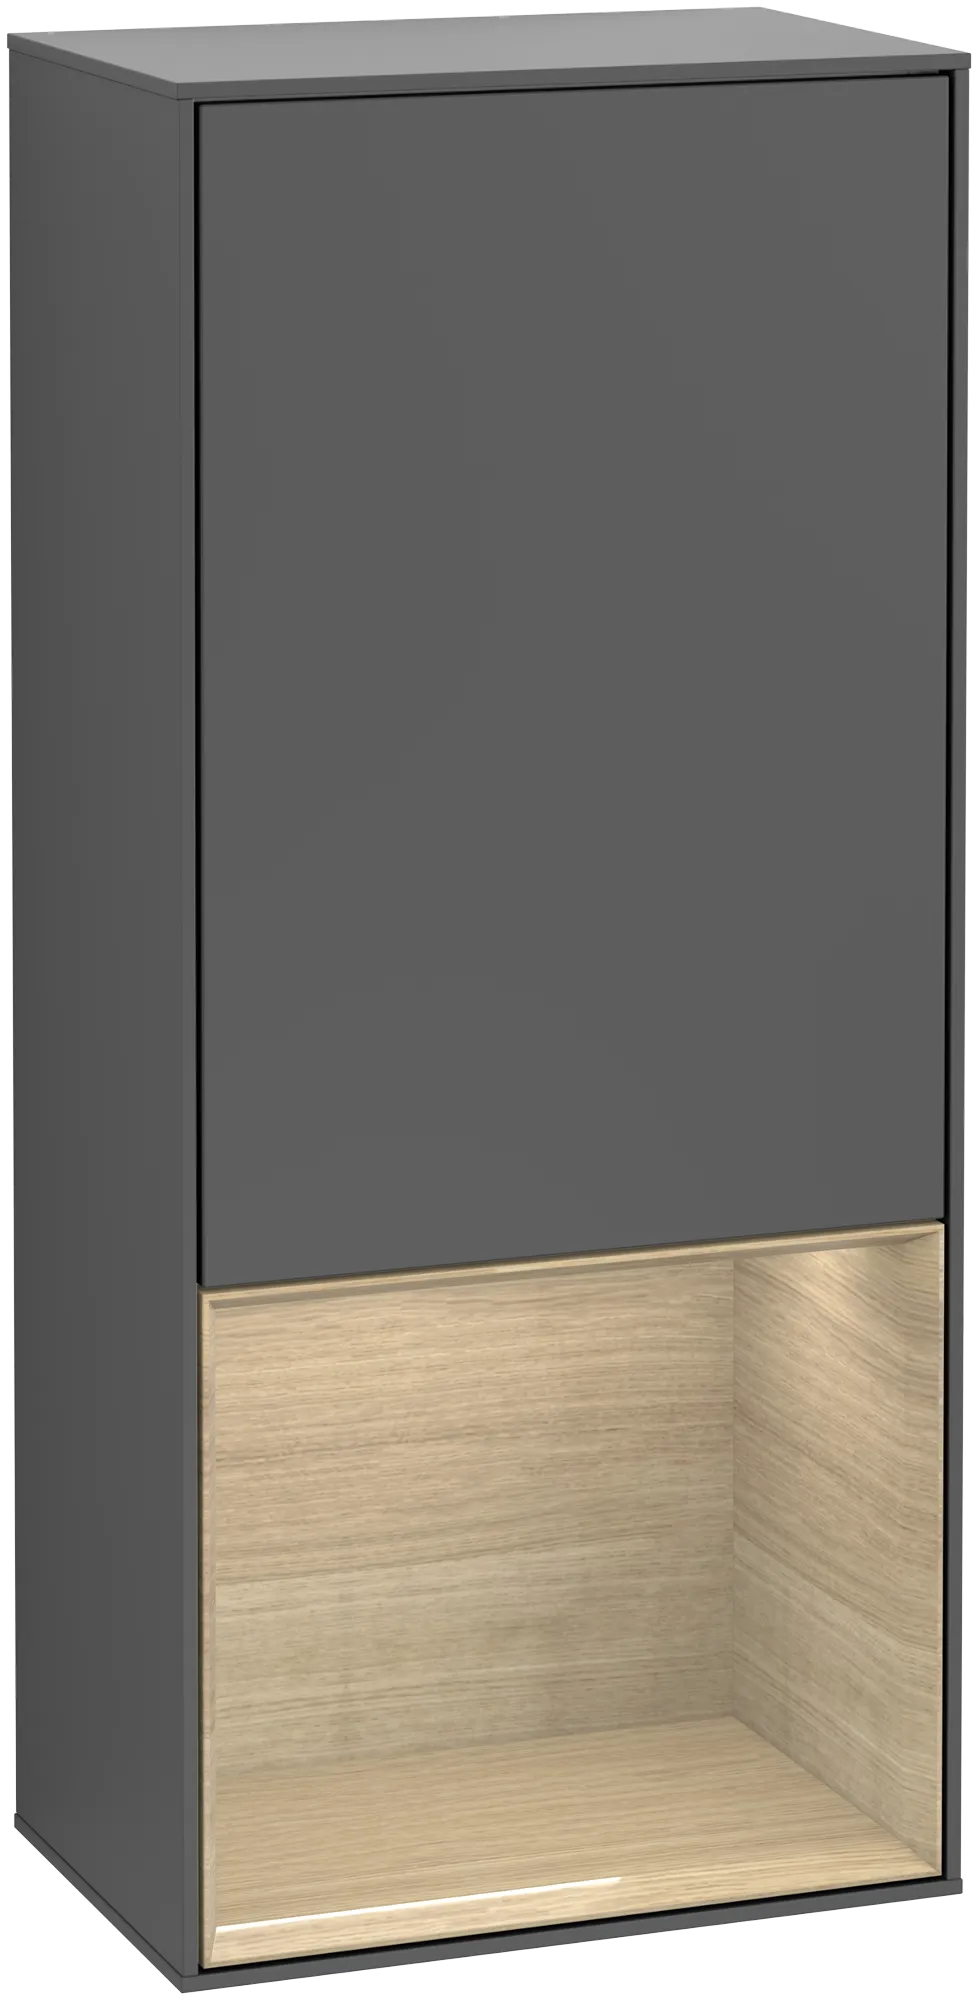 Bild von VILLEROY BOCH Finion Seitenschrank, mit Beleuchtung, 1 Tür, 418 x 936 x 270 mm, Anthracite Matt Lacquer / Oak Veneer #G550PCGK